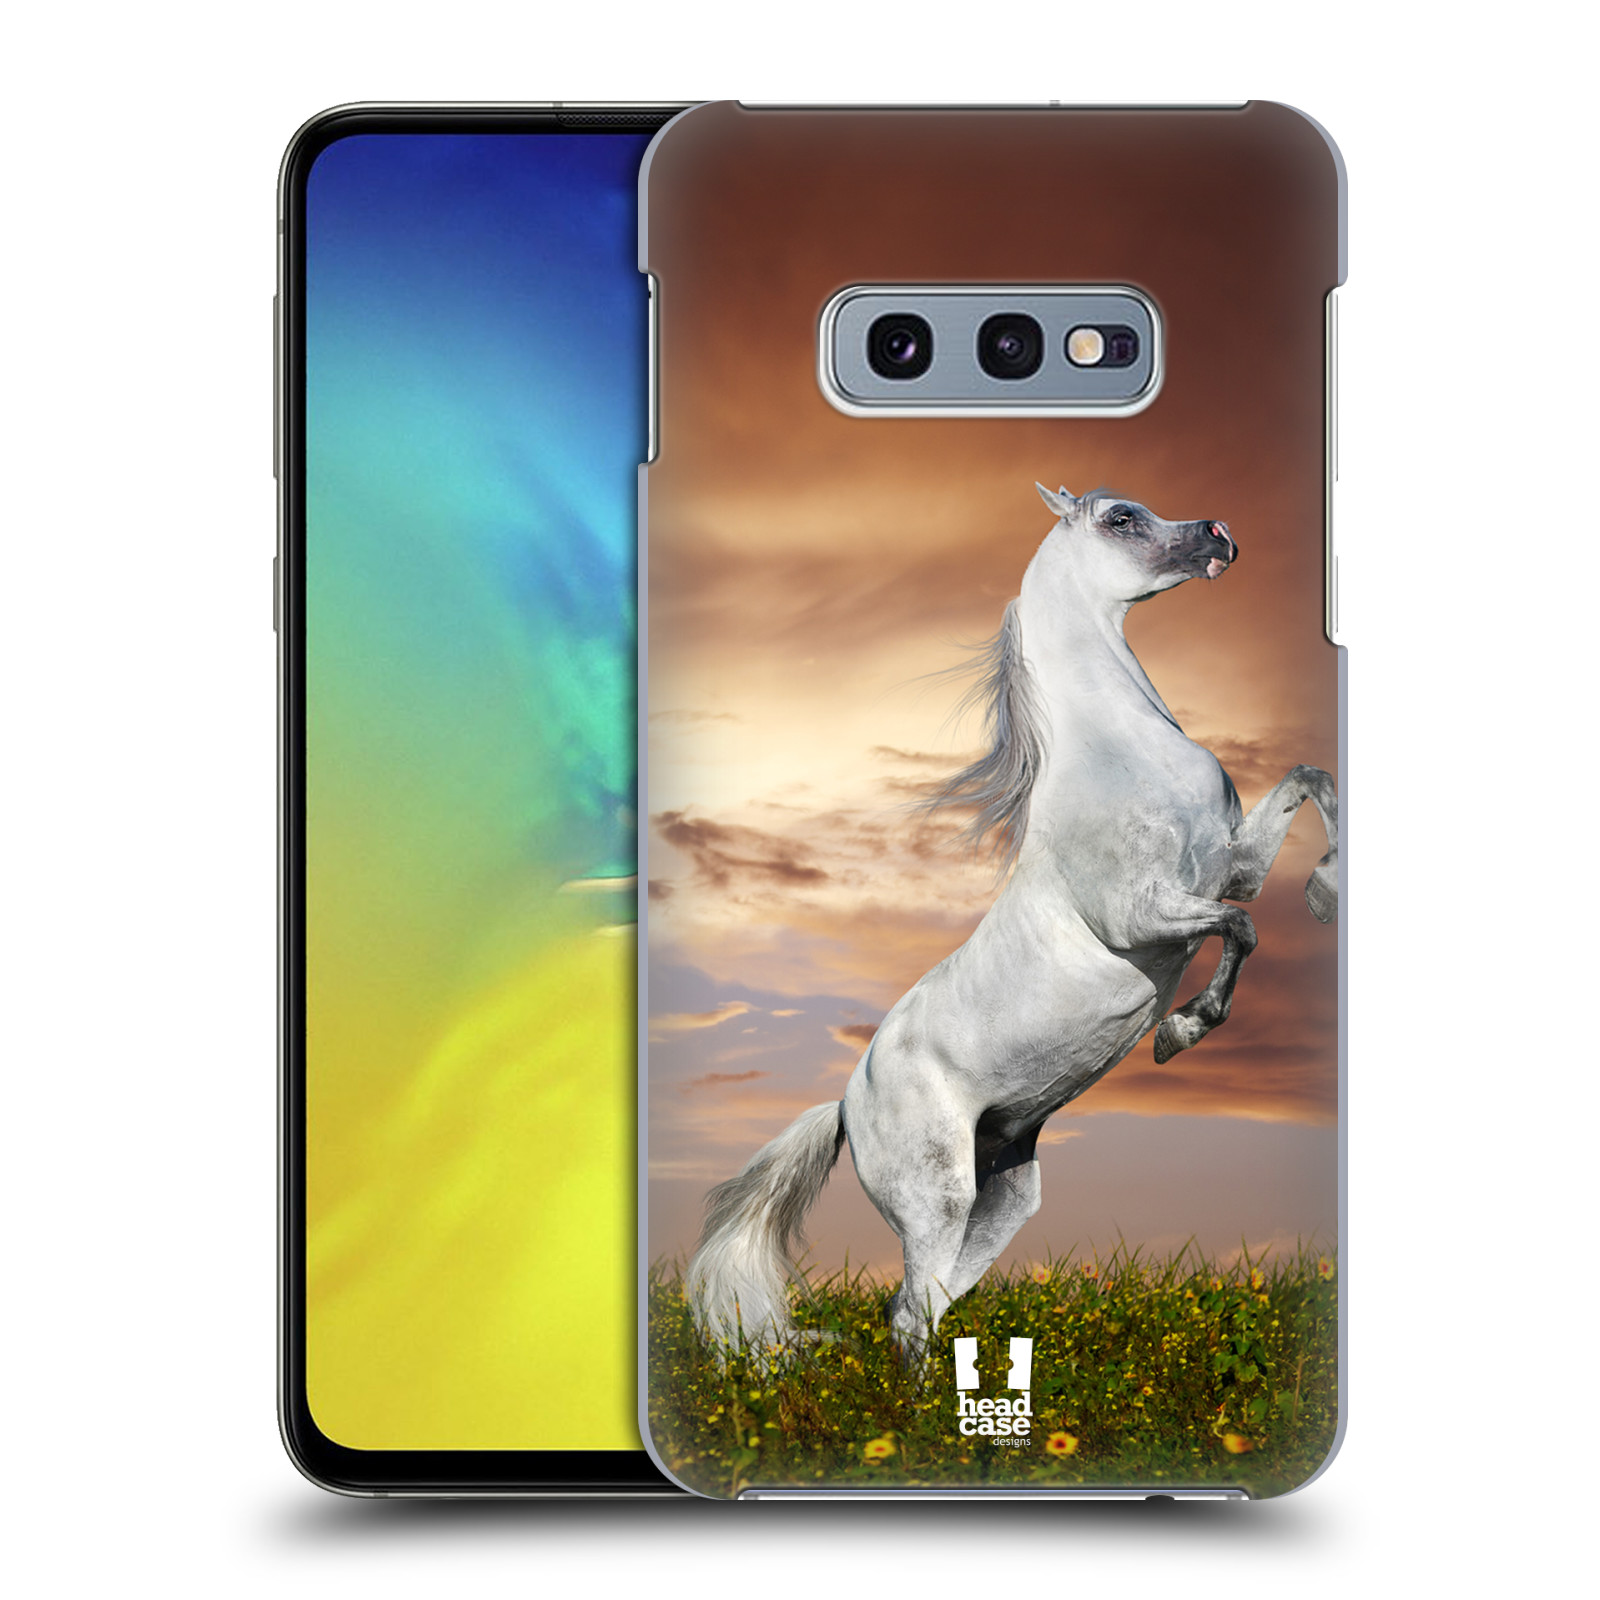 Zadní obal pro mobil Samsung Galaxy S10e - HEAD CASE - Svět zvířat divoký kůň